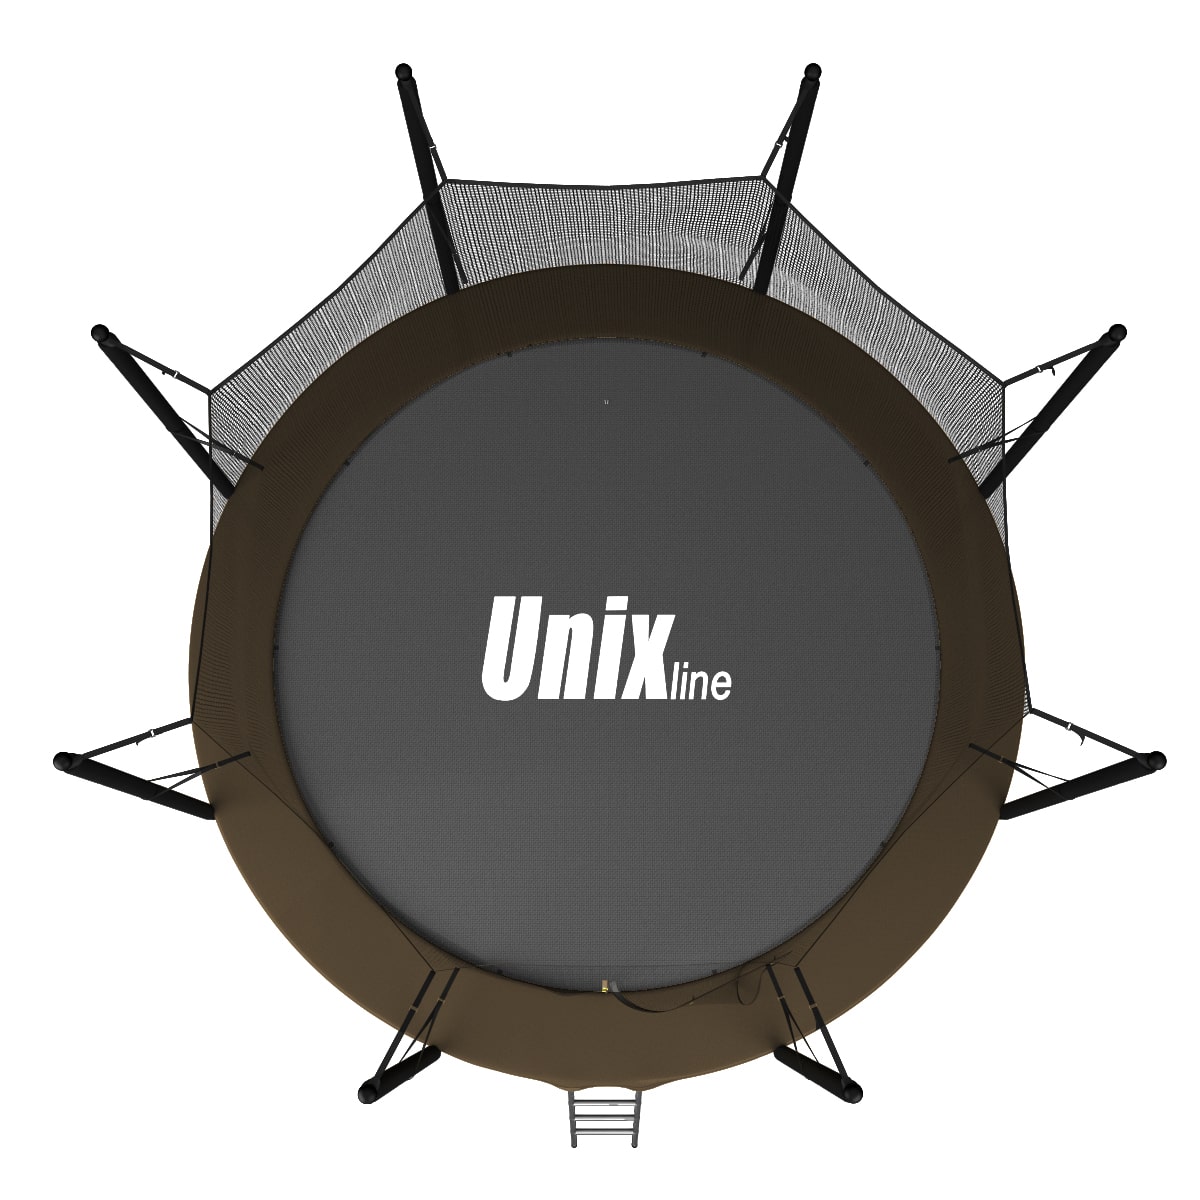 Батут UNIX line Black&Brown 10 ft, внутренняя сетка